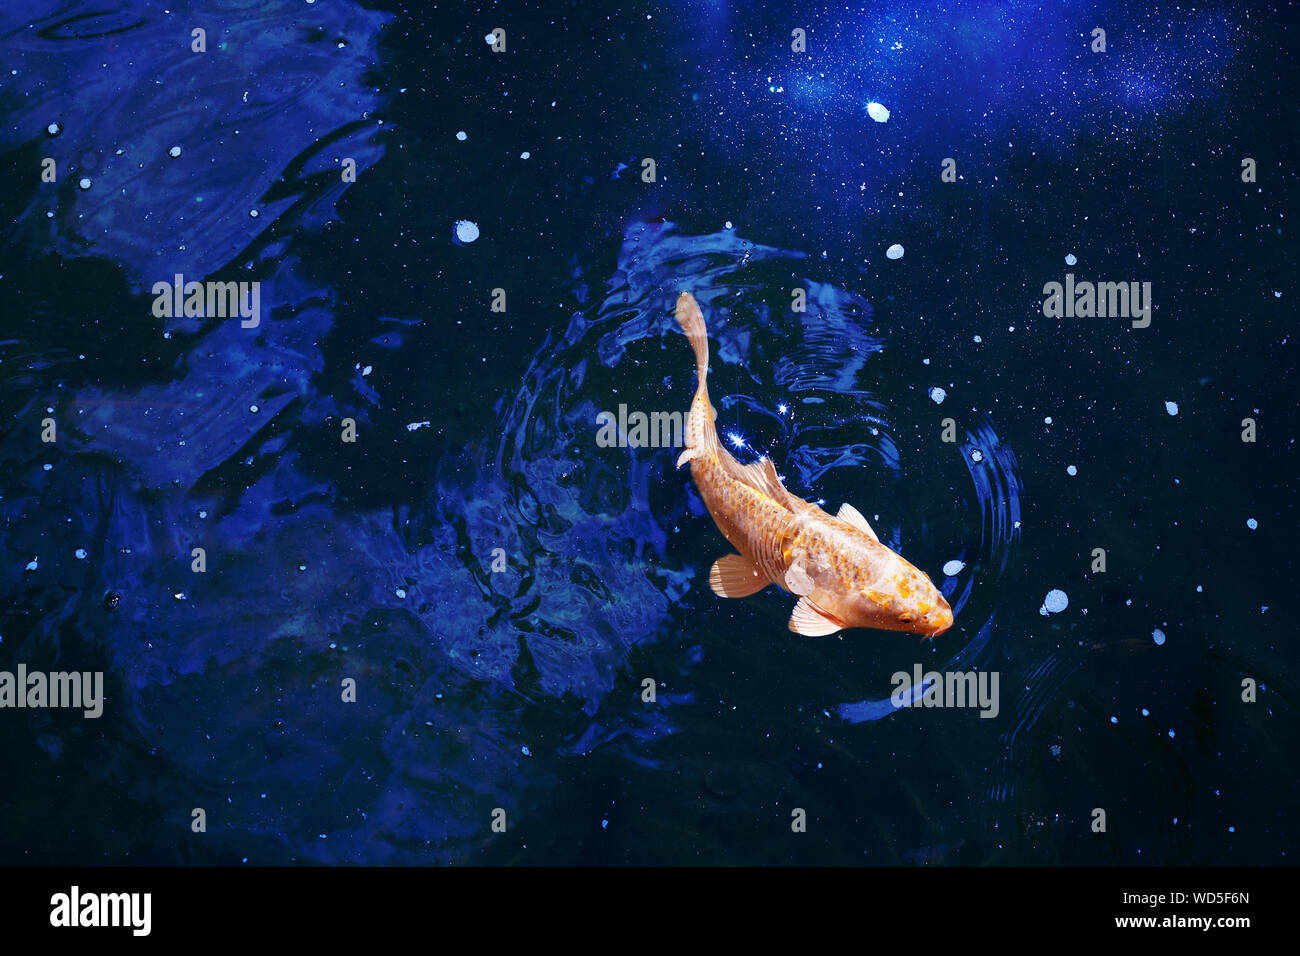 Poissons rouges dans l'eau brillante bleu foncé, rouge et jaune des carpes koï japonais nage en étang close up, résumé poisson doré constellation, symbole de l'astrologie Banque D'Images